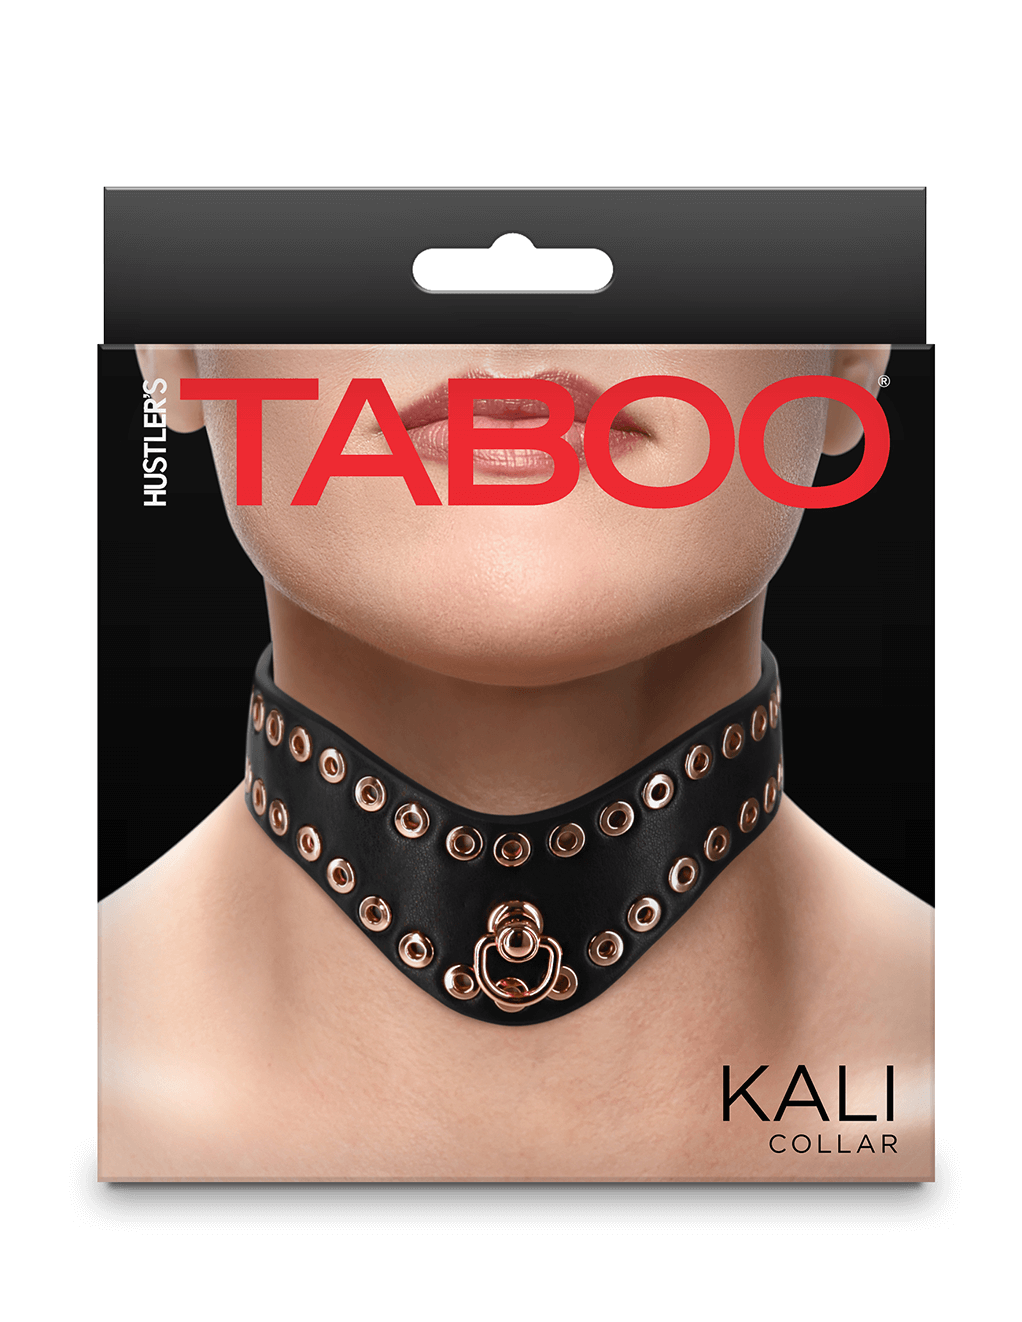 Taboo Kali Collar - Box - Front